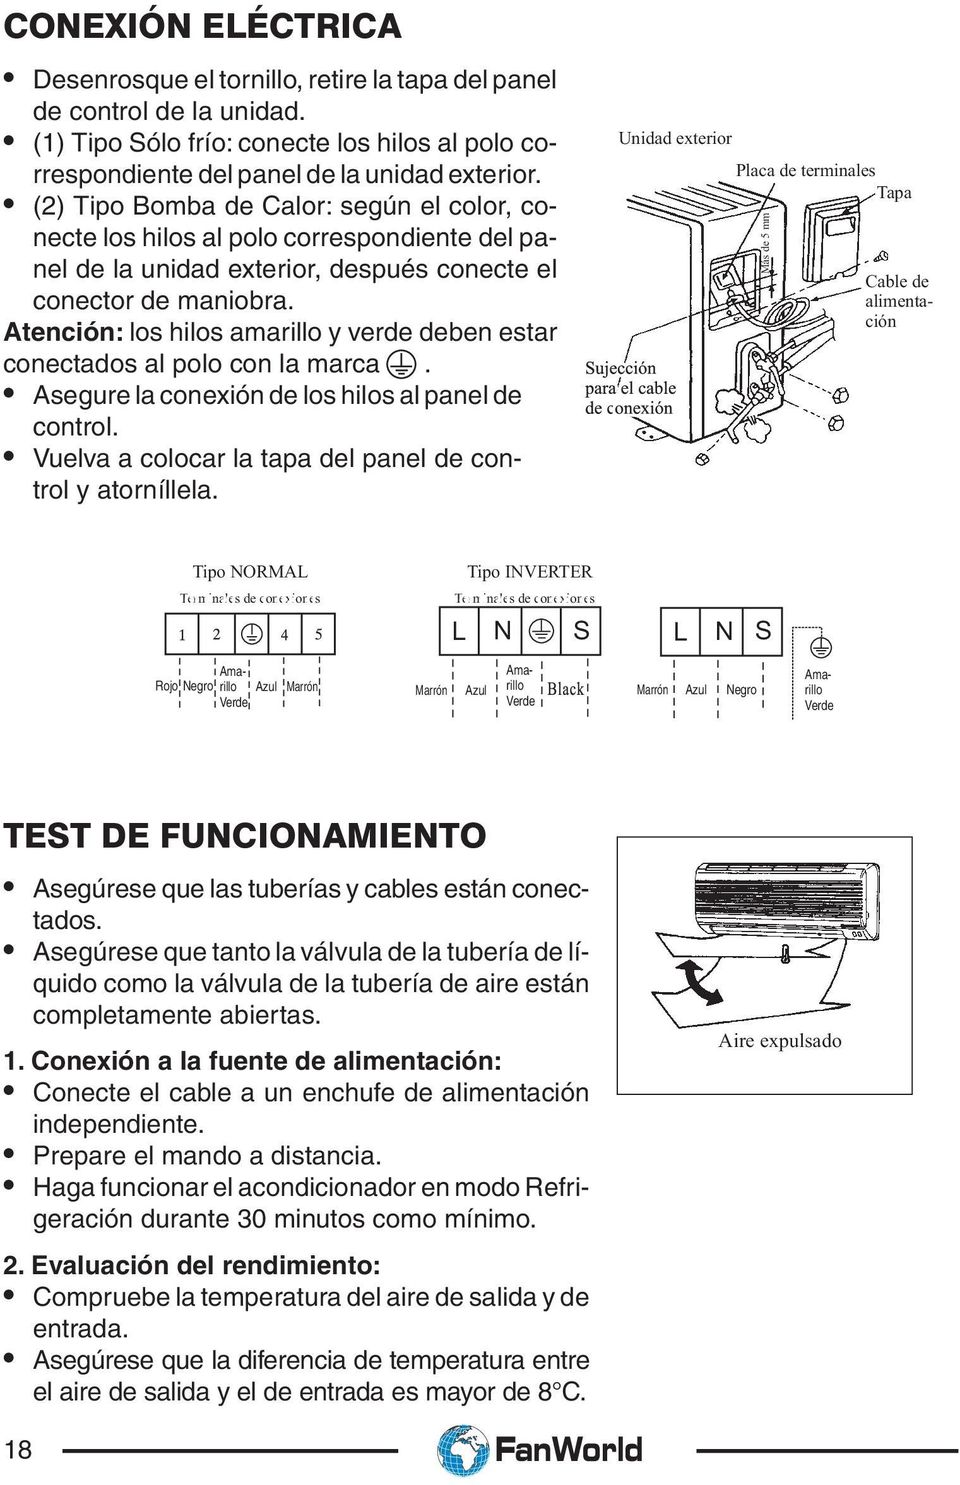 FanWorld. Manual de Usuario y de Instalación. FanWorld - PDF Descargar libre